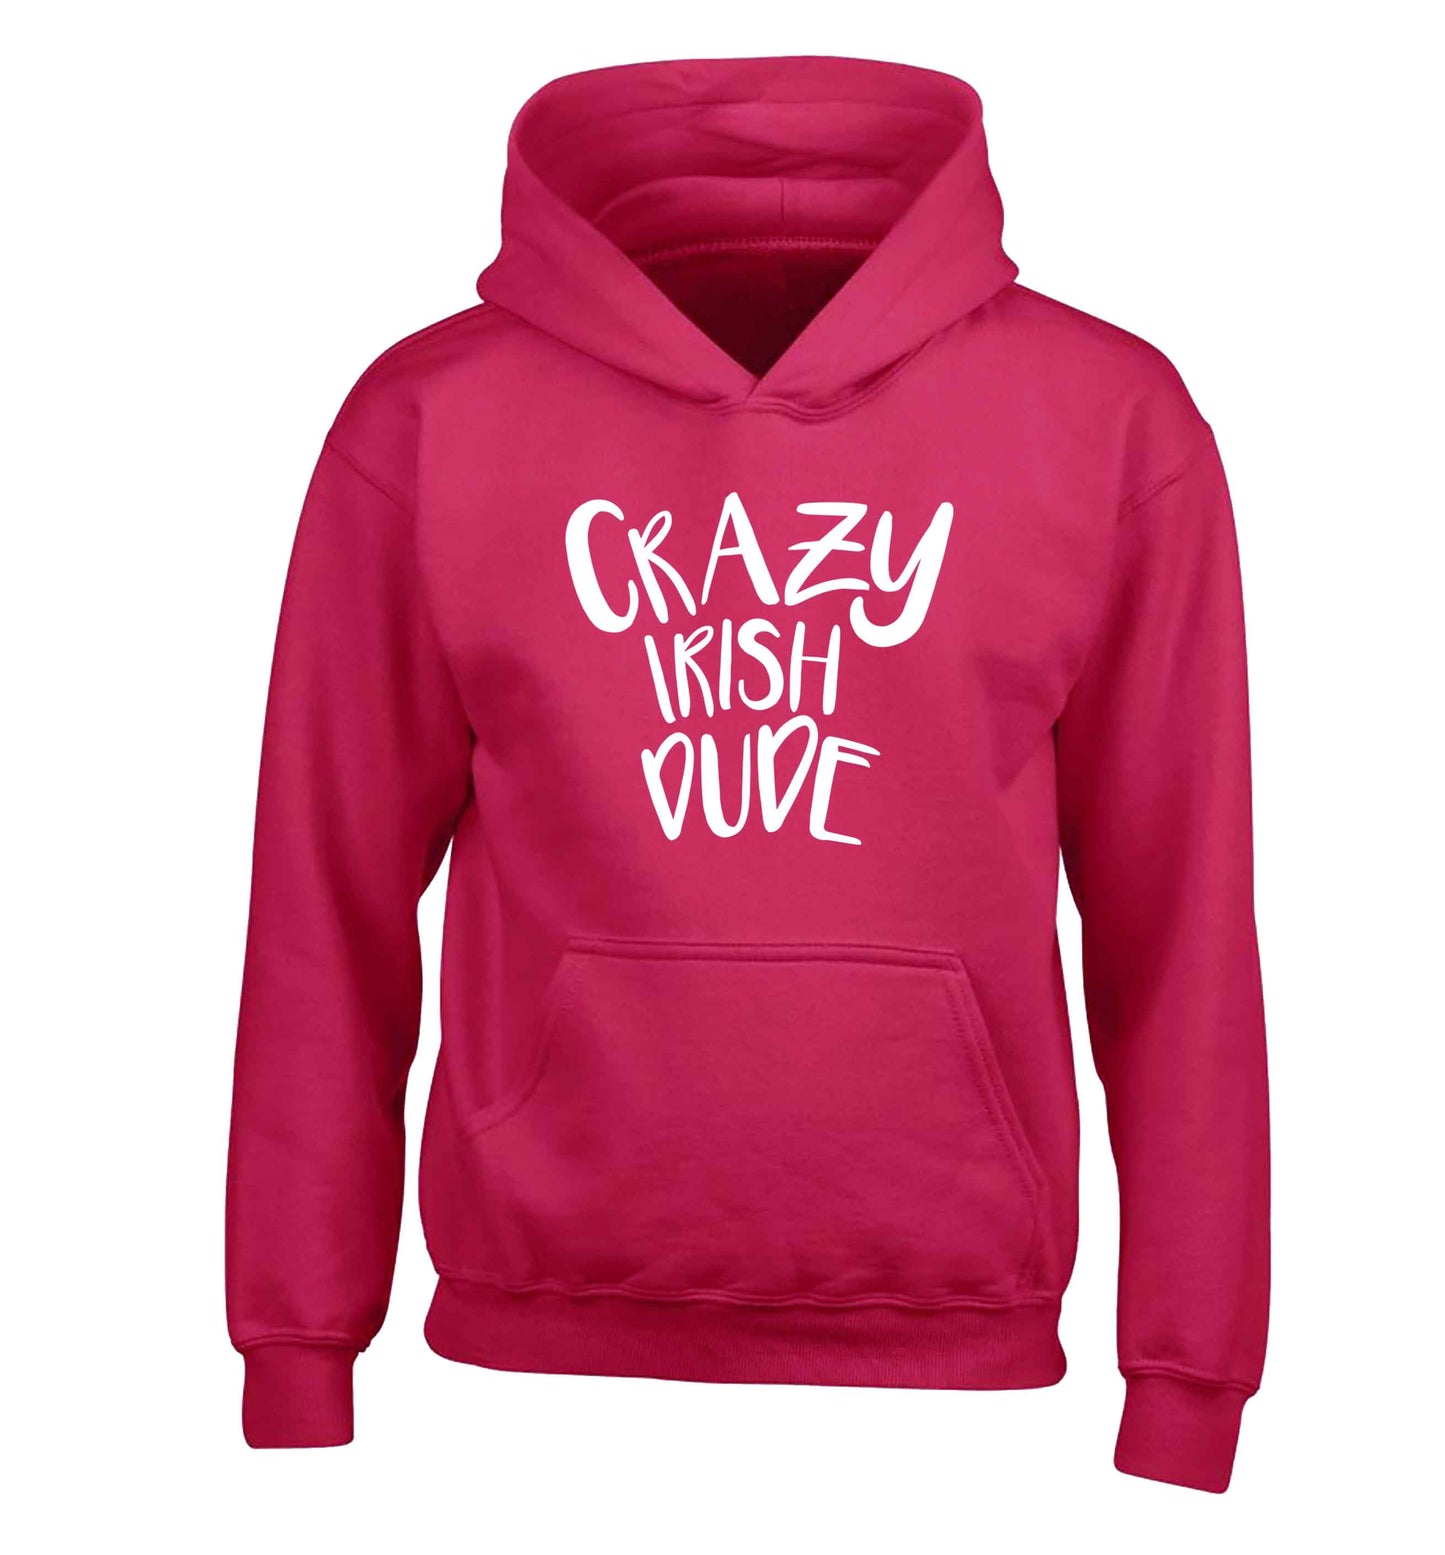 Crazy Irish dude children's pink hoodie 12-13 Years